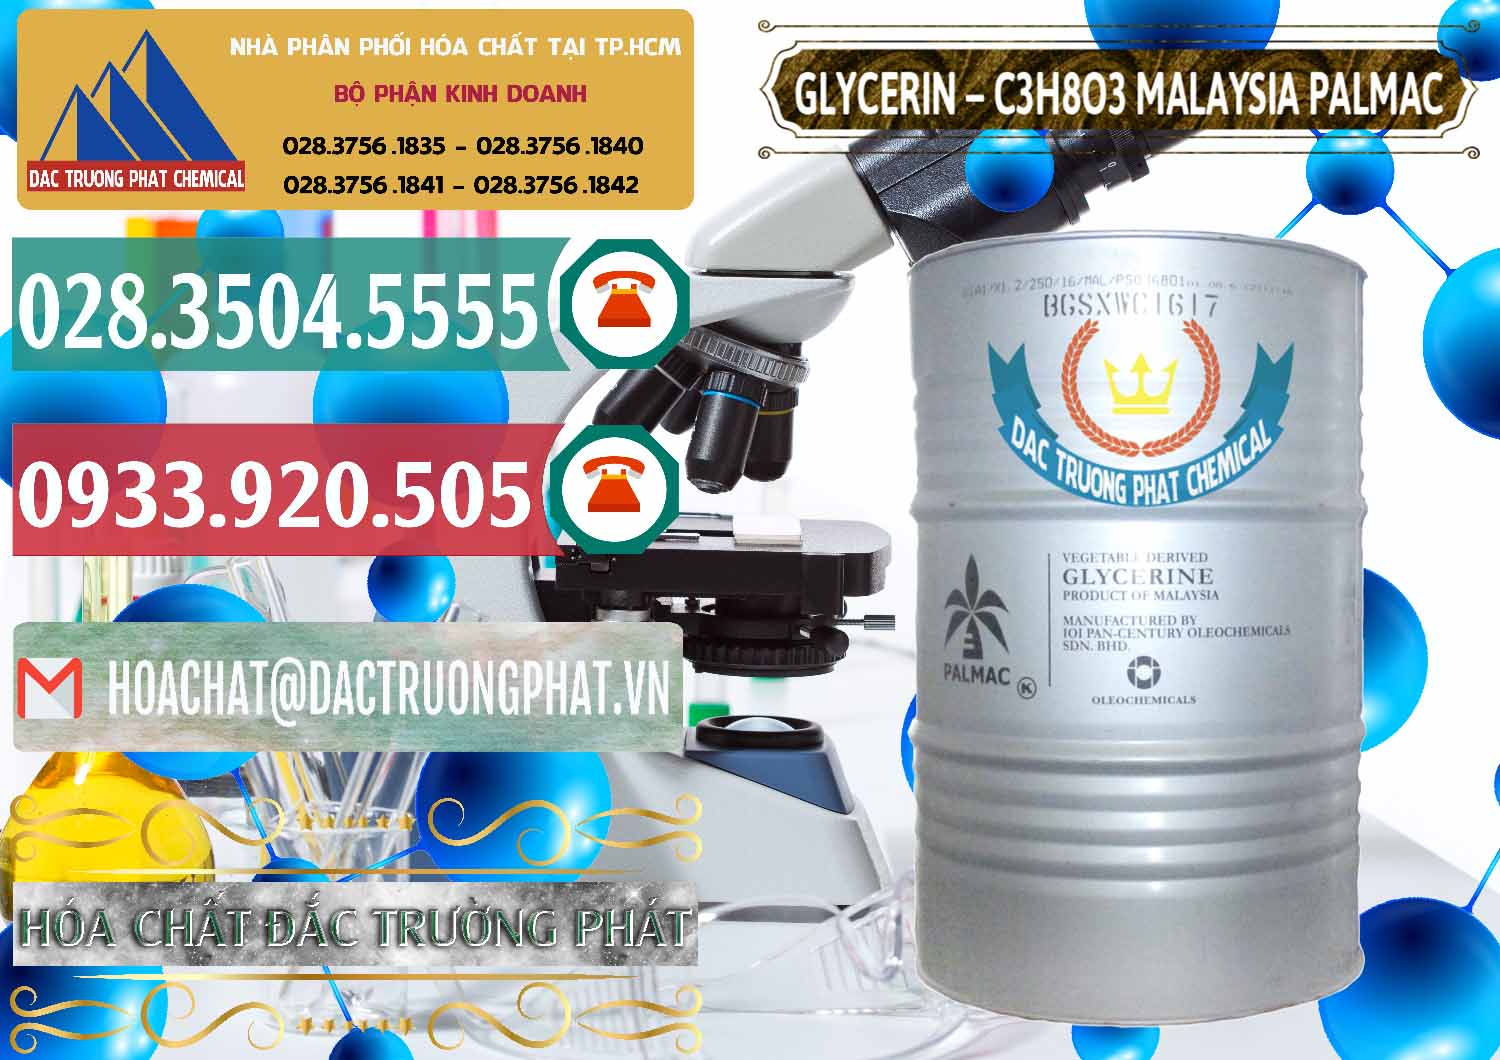 Đơn vị chuyên cung cấp & bán Glycerin – C3H8O3 99.7% Malaysia Palmac - 0067 - Công ty chuyên cung cấp - bán hóa chất tại TP.HCM - muabanhoachat.vn